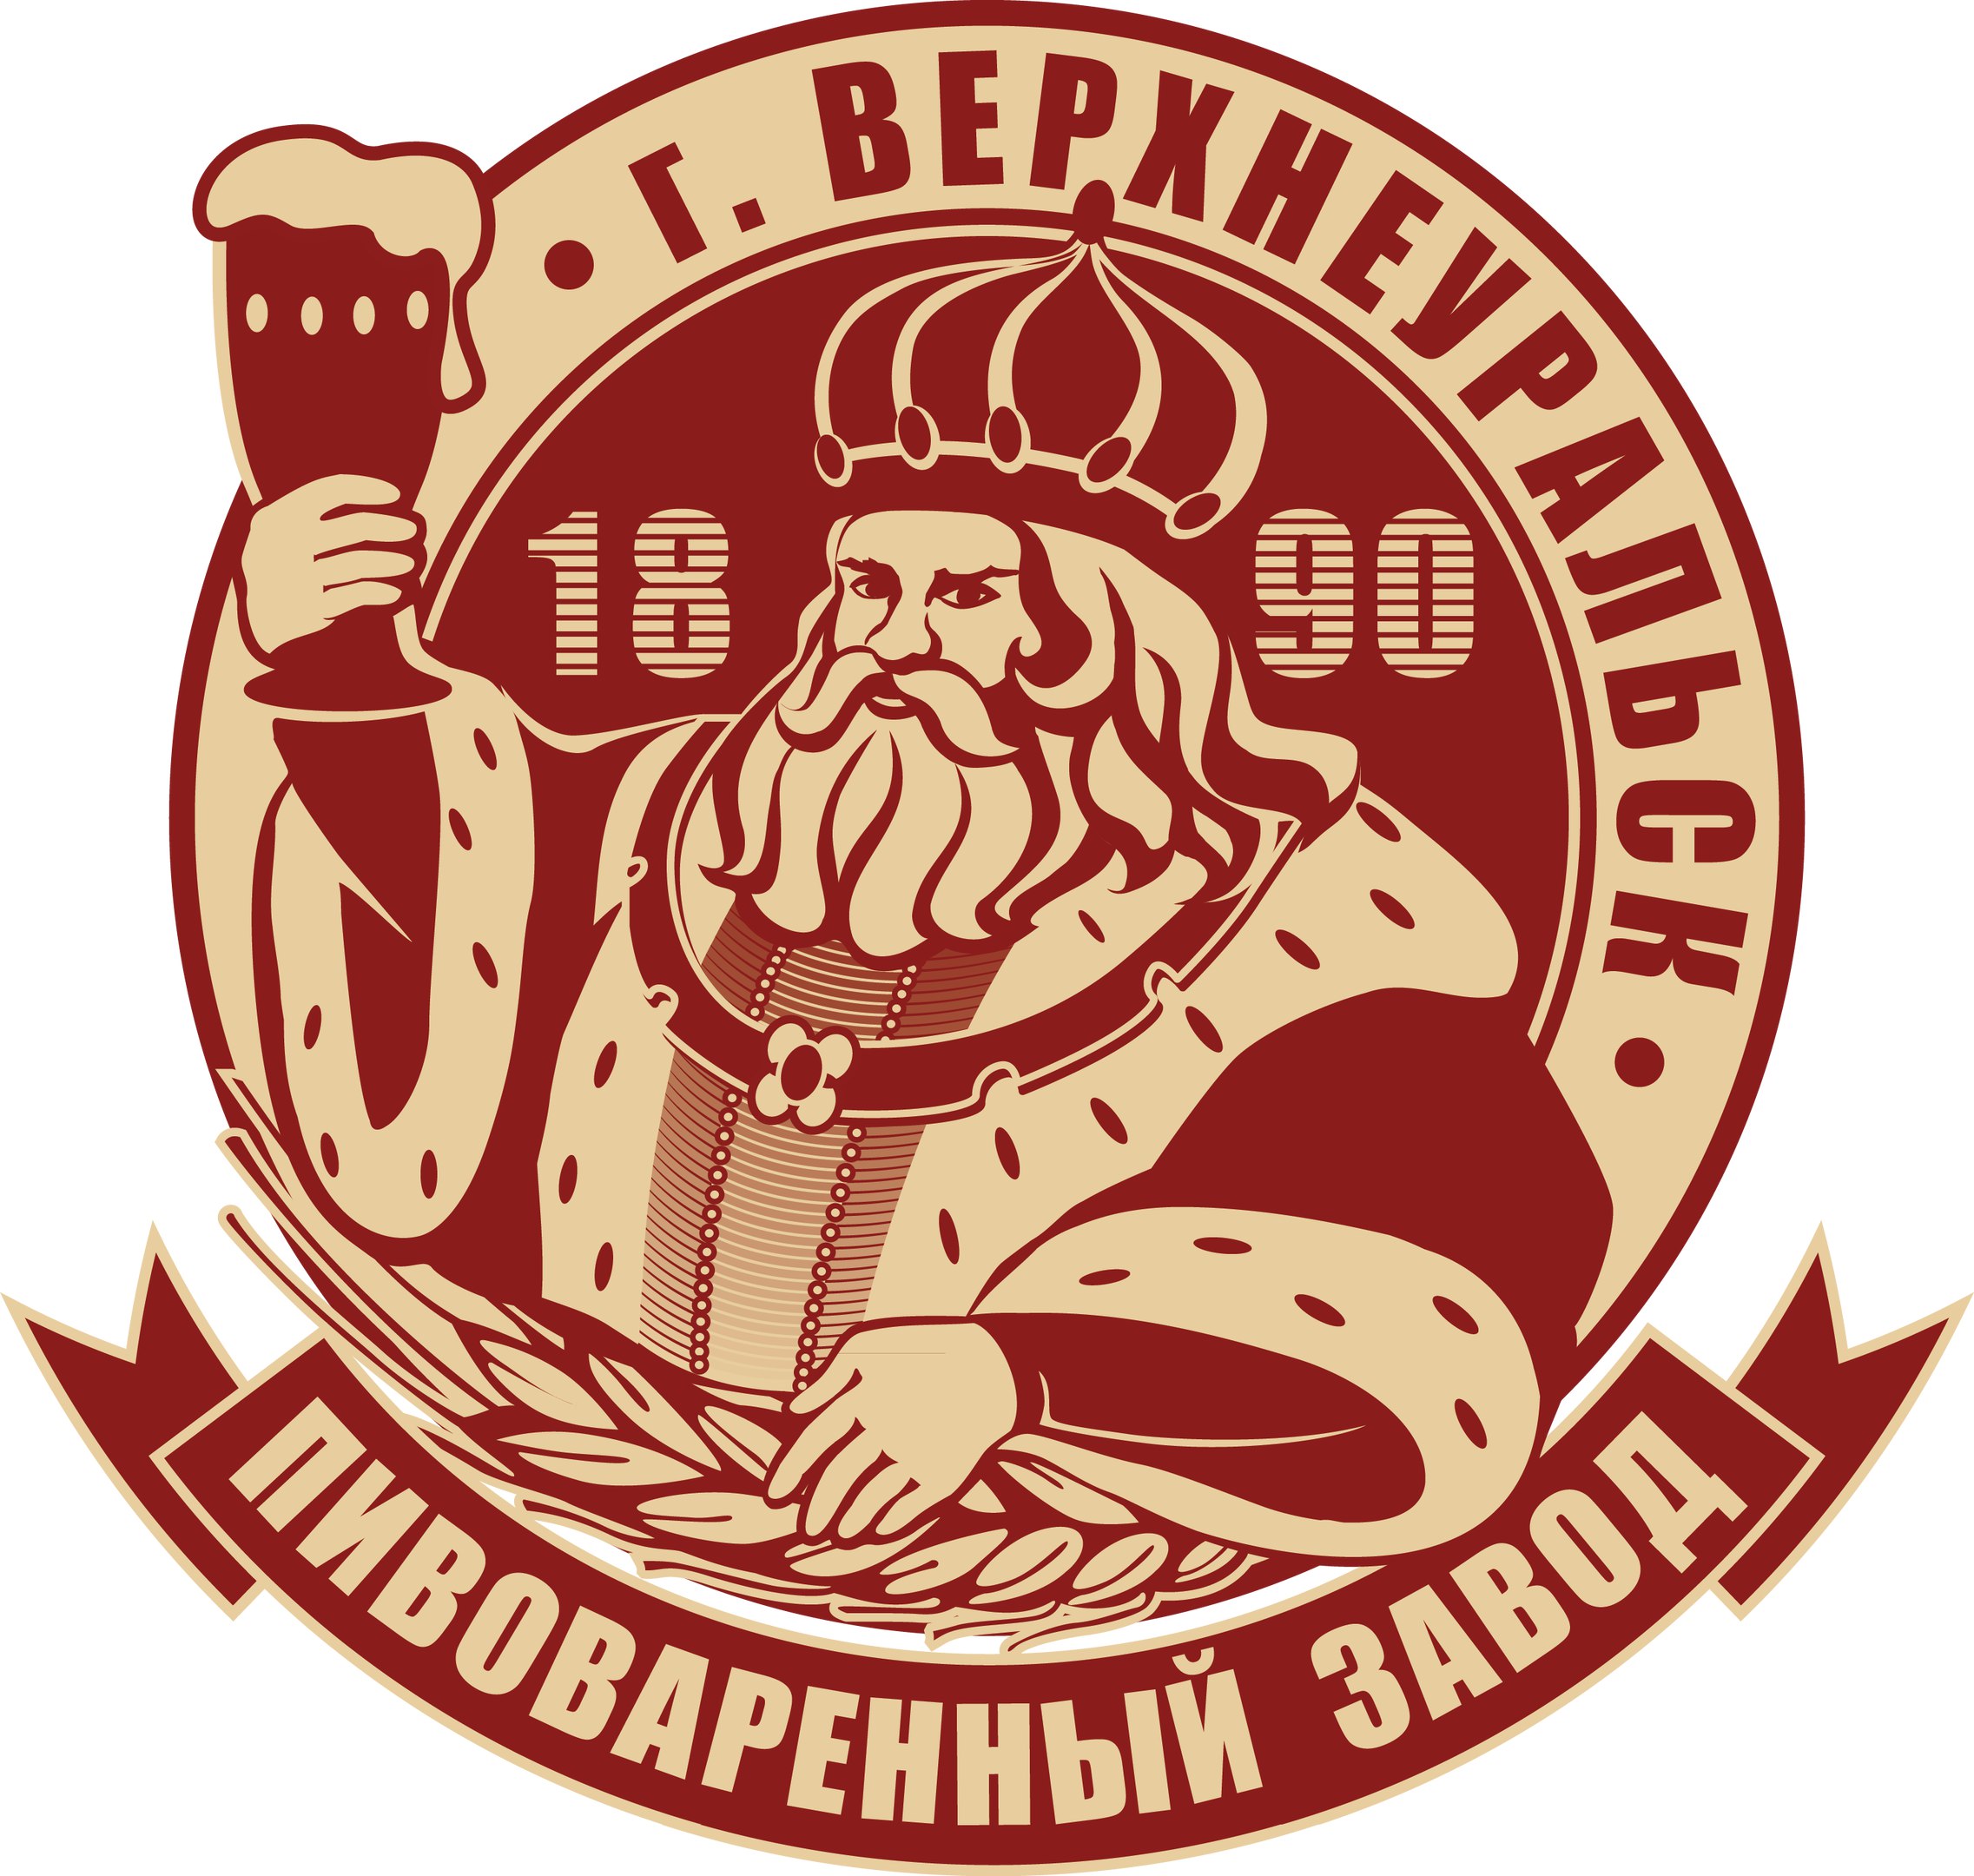 Верхнеуральский пивоваренный завод, г.Верхнеуральск